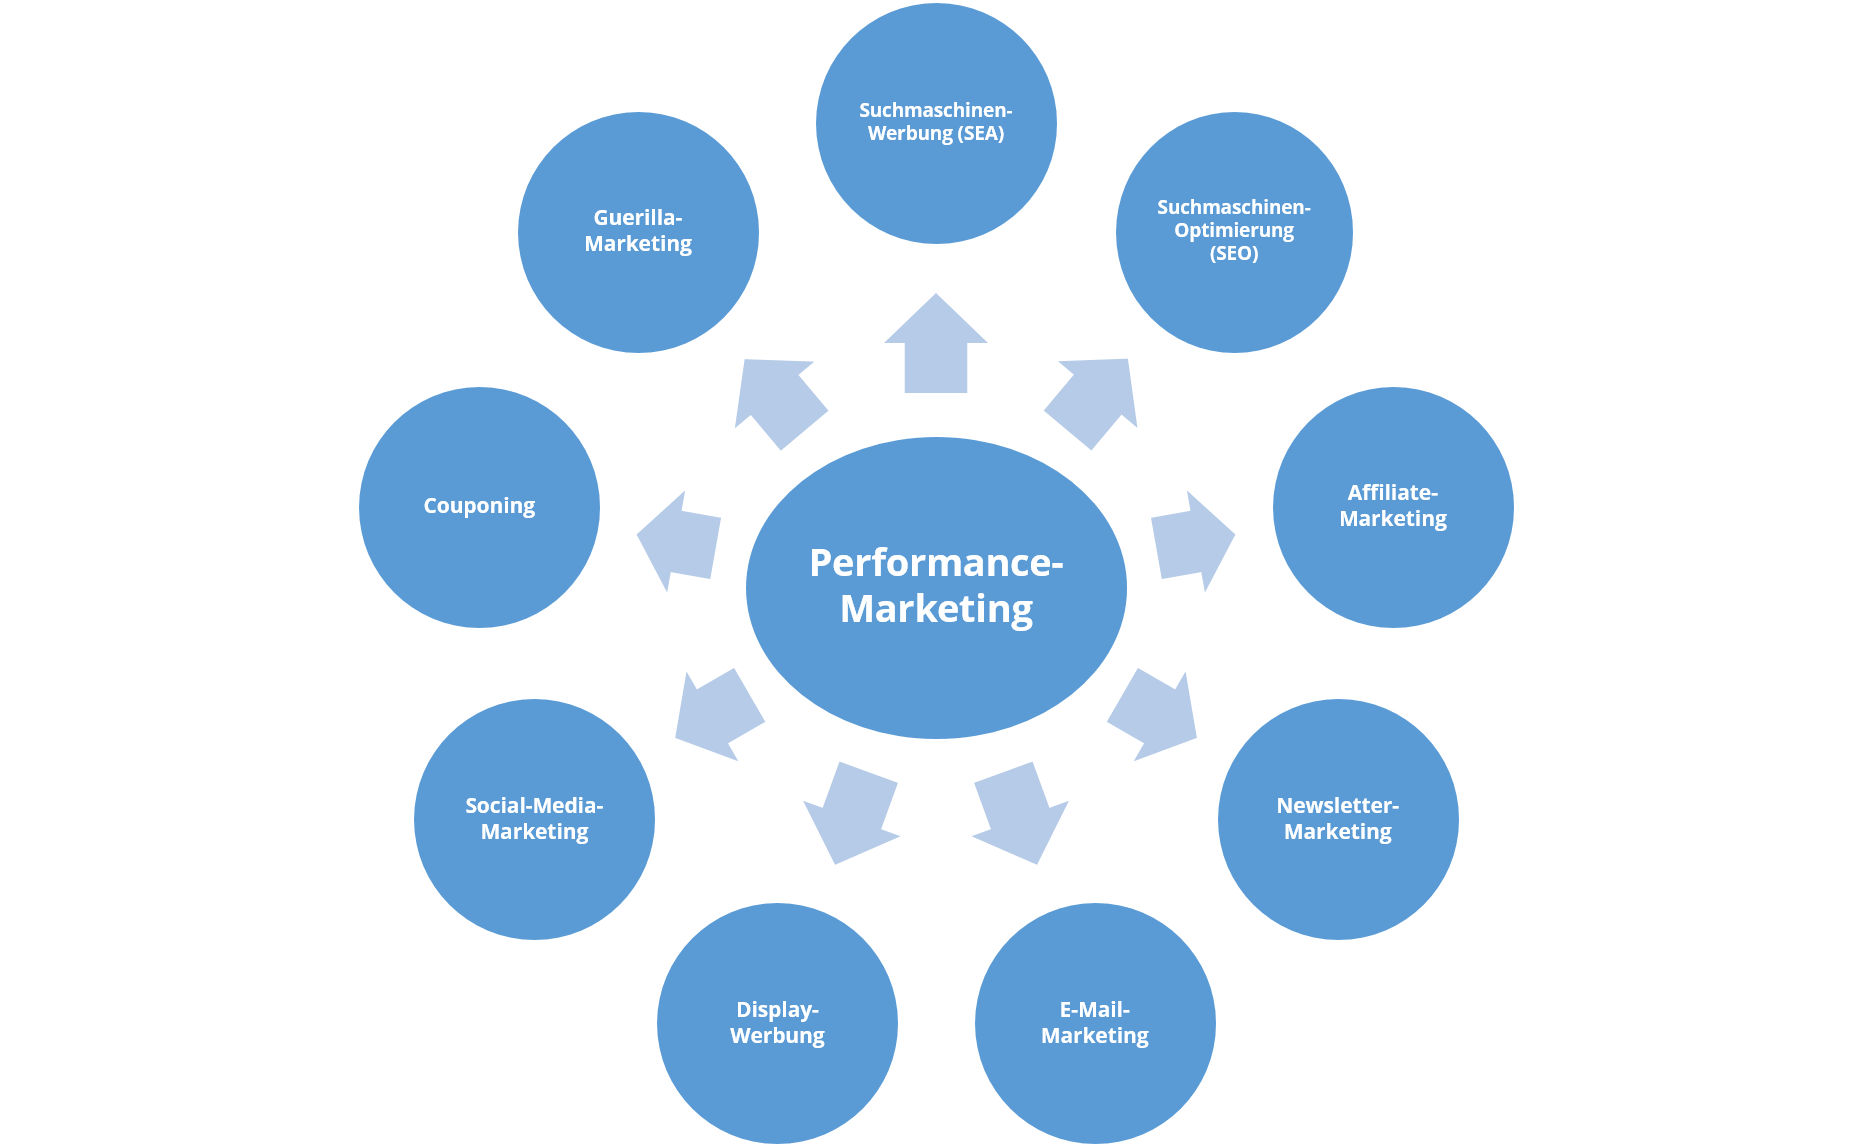 Grafik zeigt gängige Kanäle, die im Rahmen von Performance-Marketing genutzt werden können